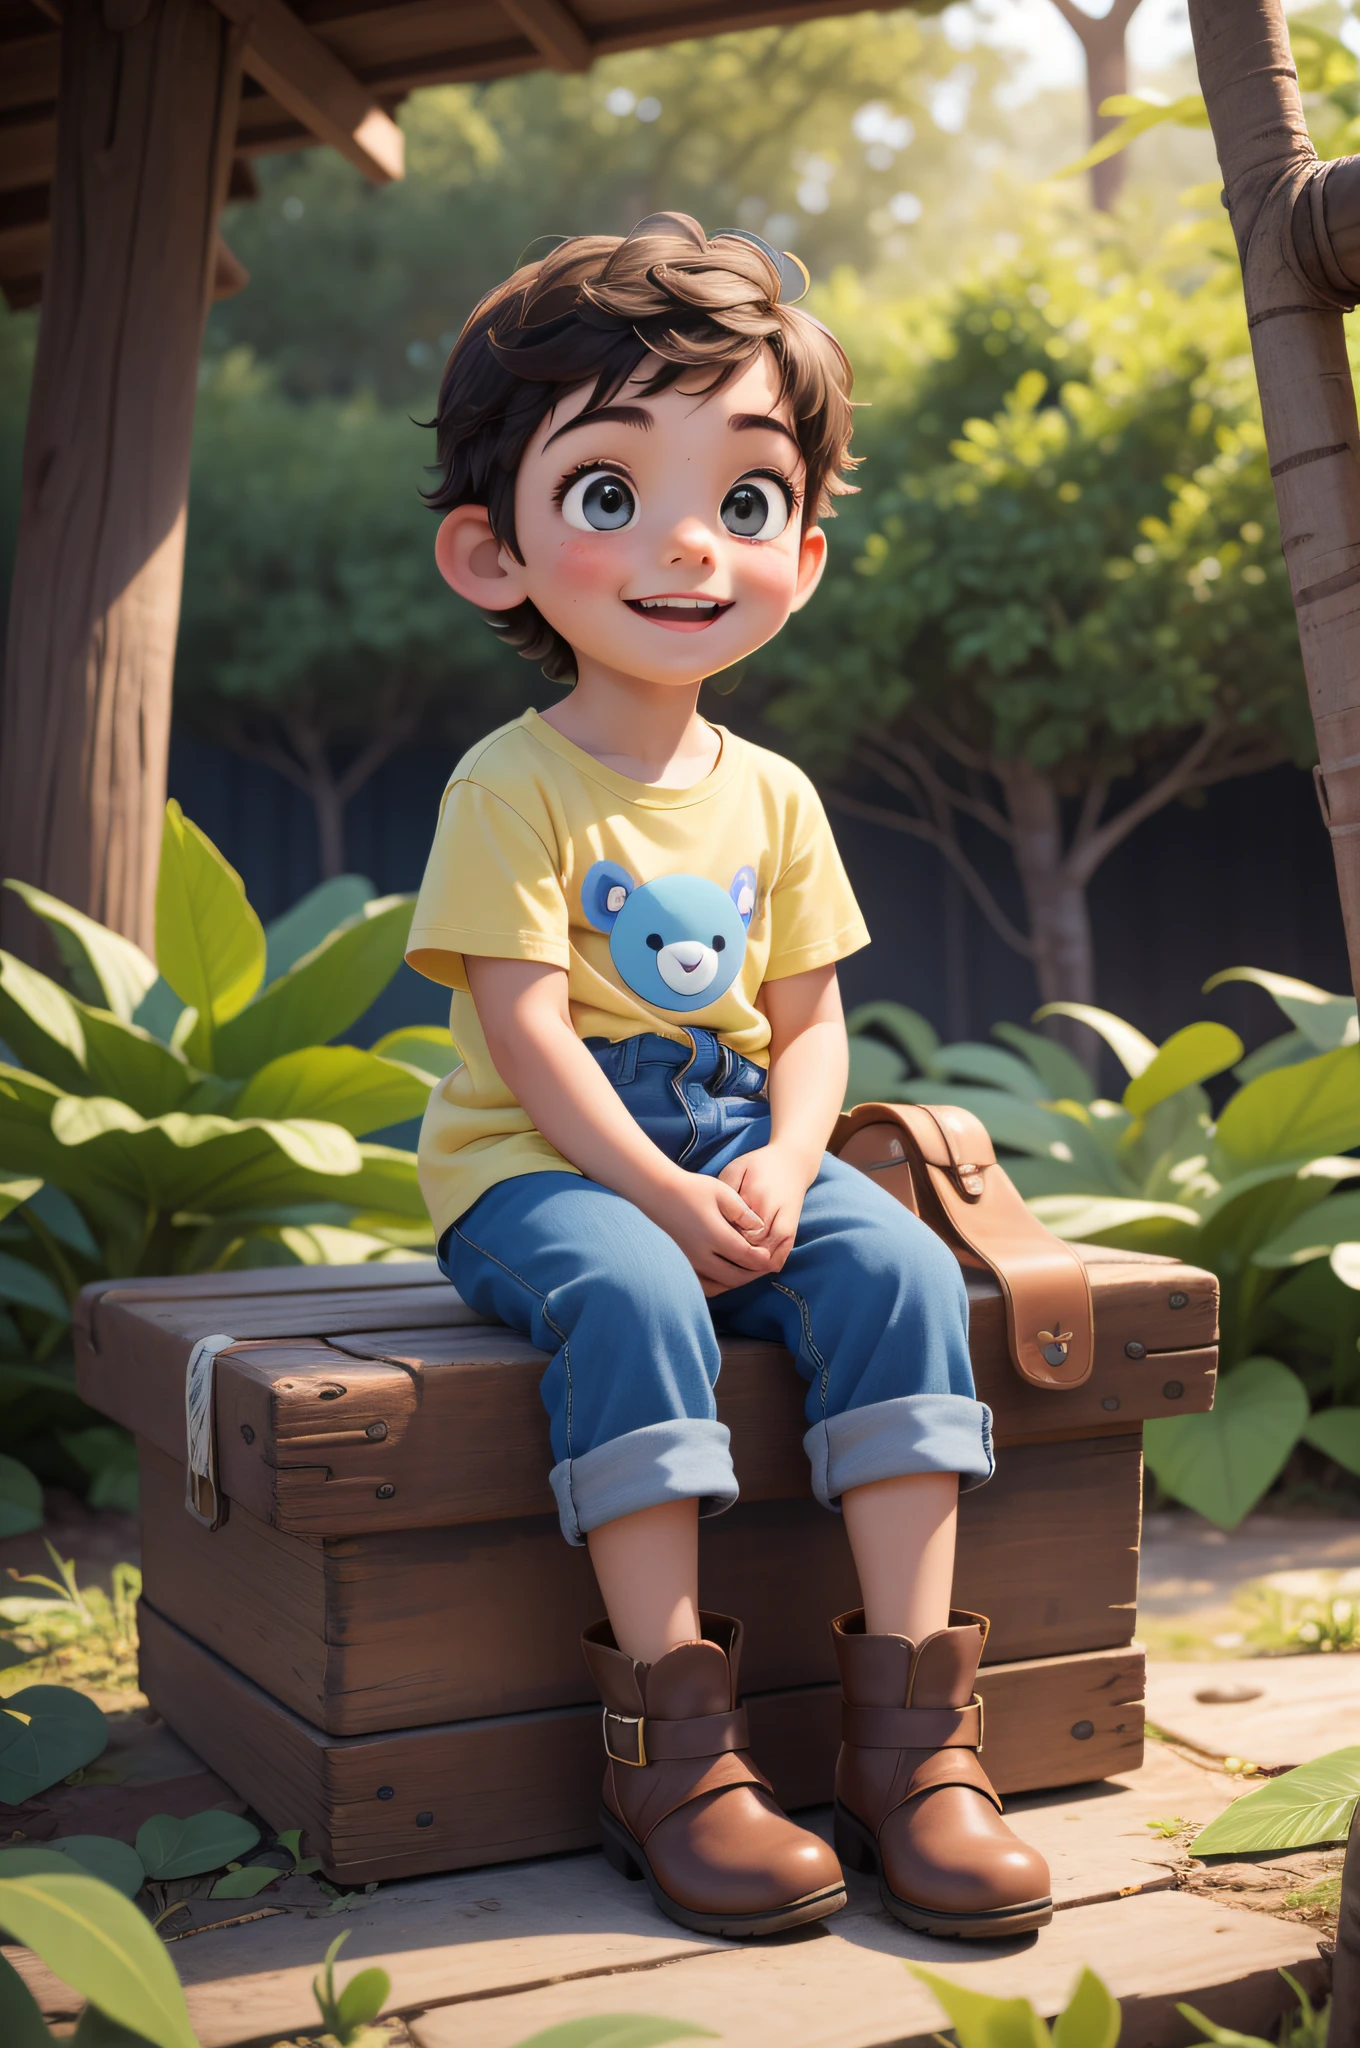 小小探险家之旅: 一个快乐的小男孩坐在地板上, 在树林里, 背着一个蓝色小背包, 黄色衬衫, 黑色短裤, 蓝色登山靴